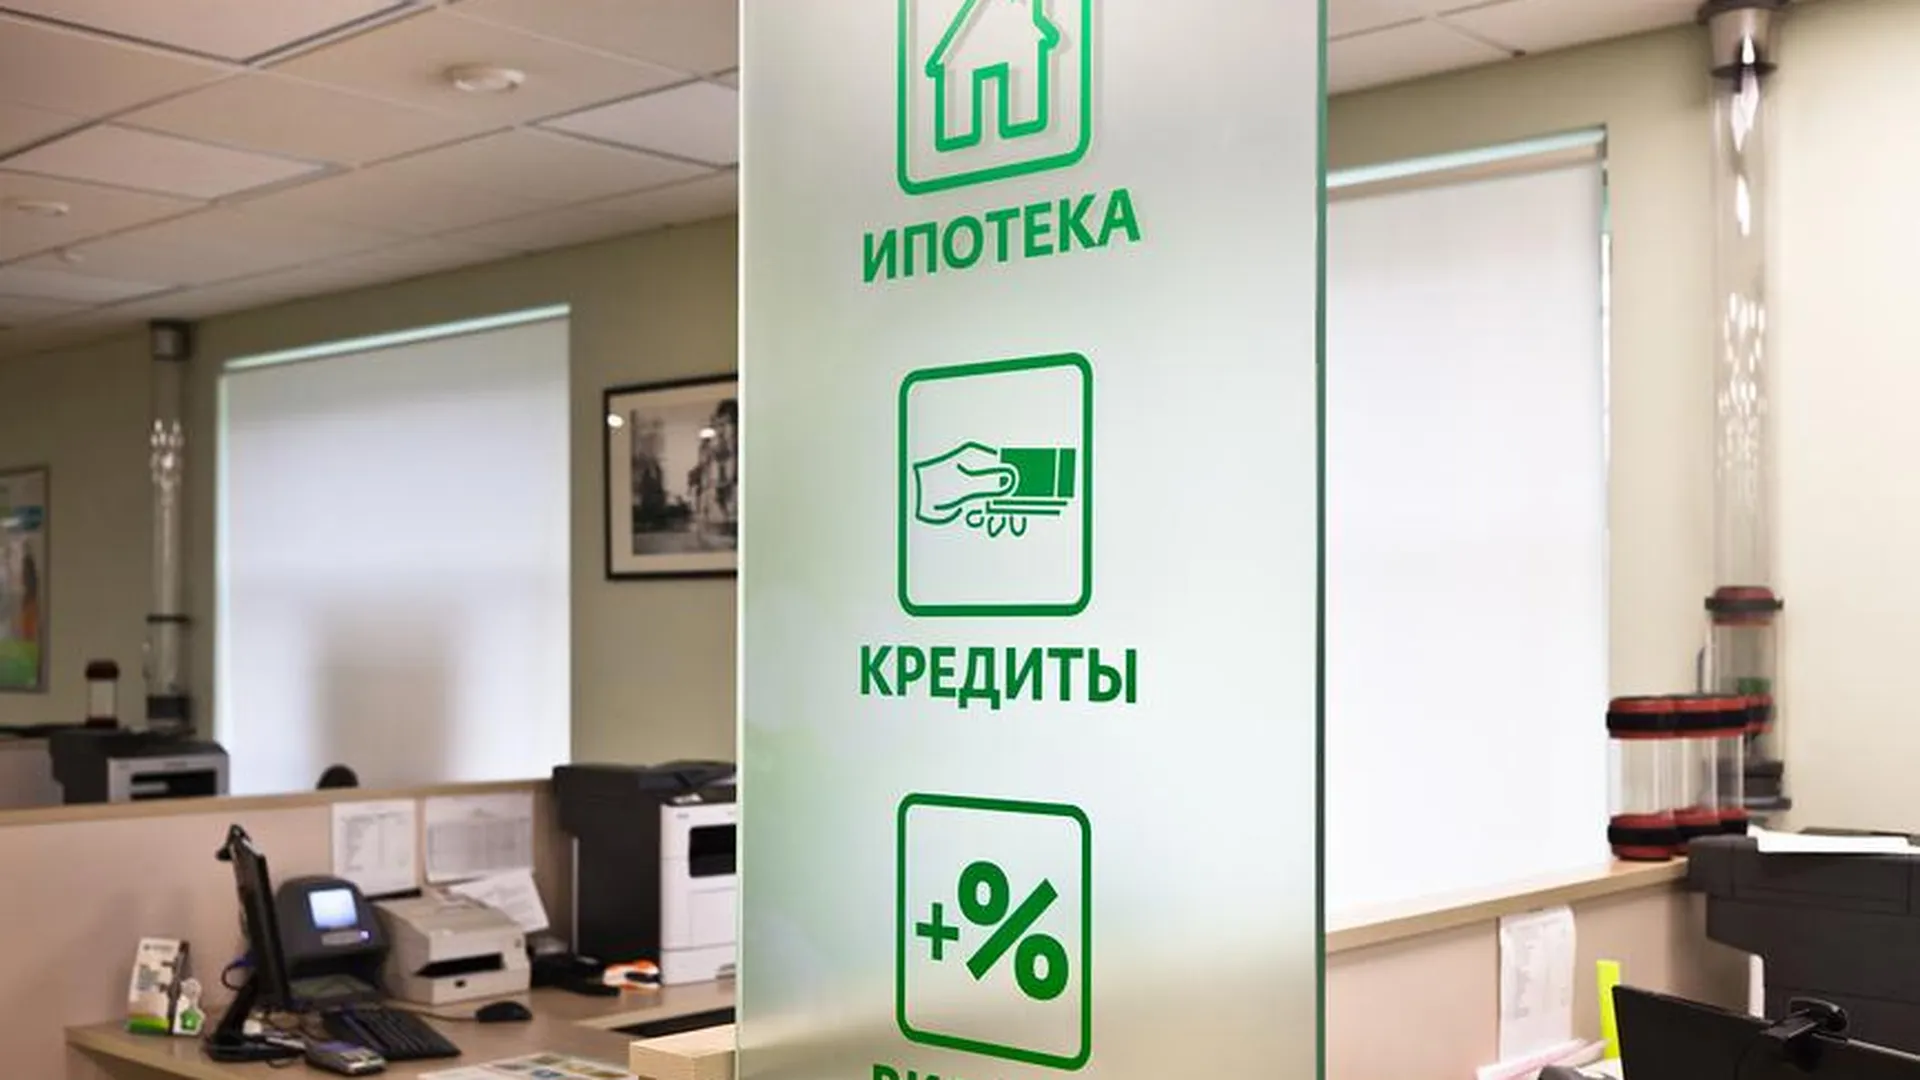 Банк России: средняя ставка по ипотеке в Подмосковье снизилась